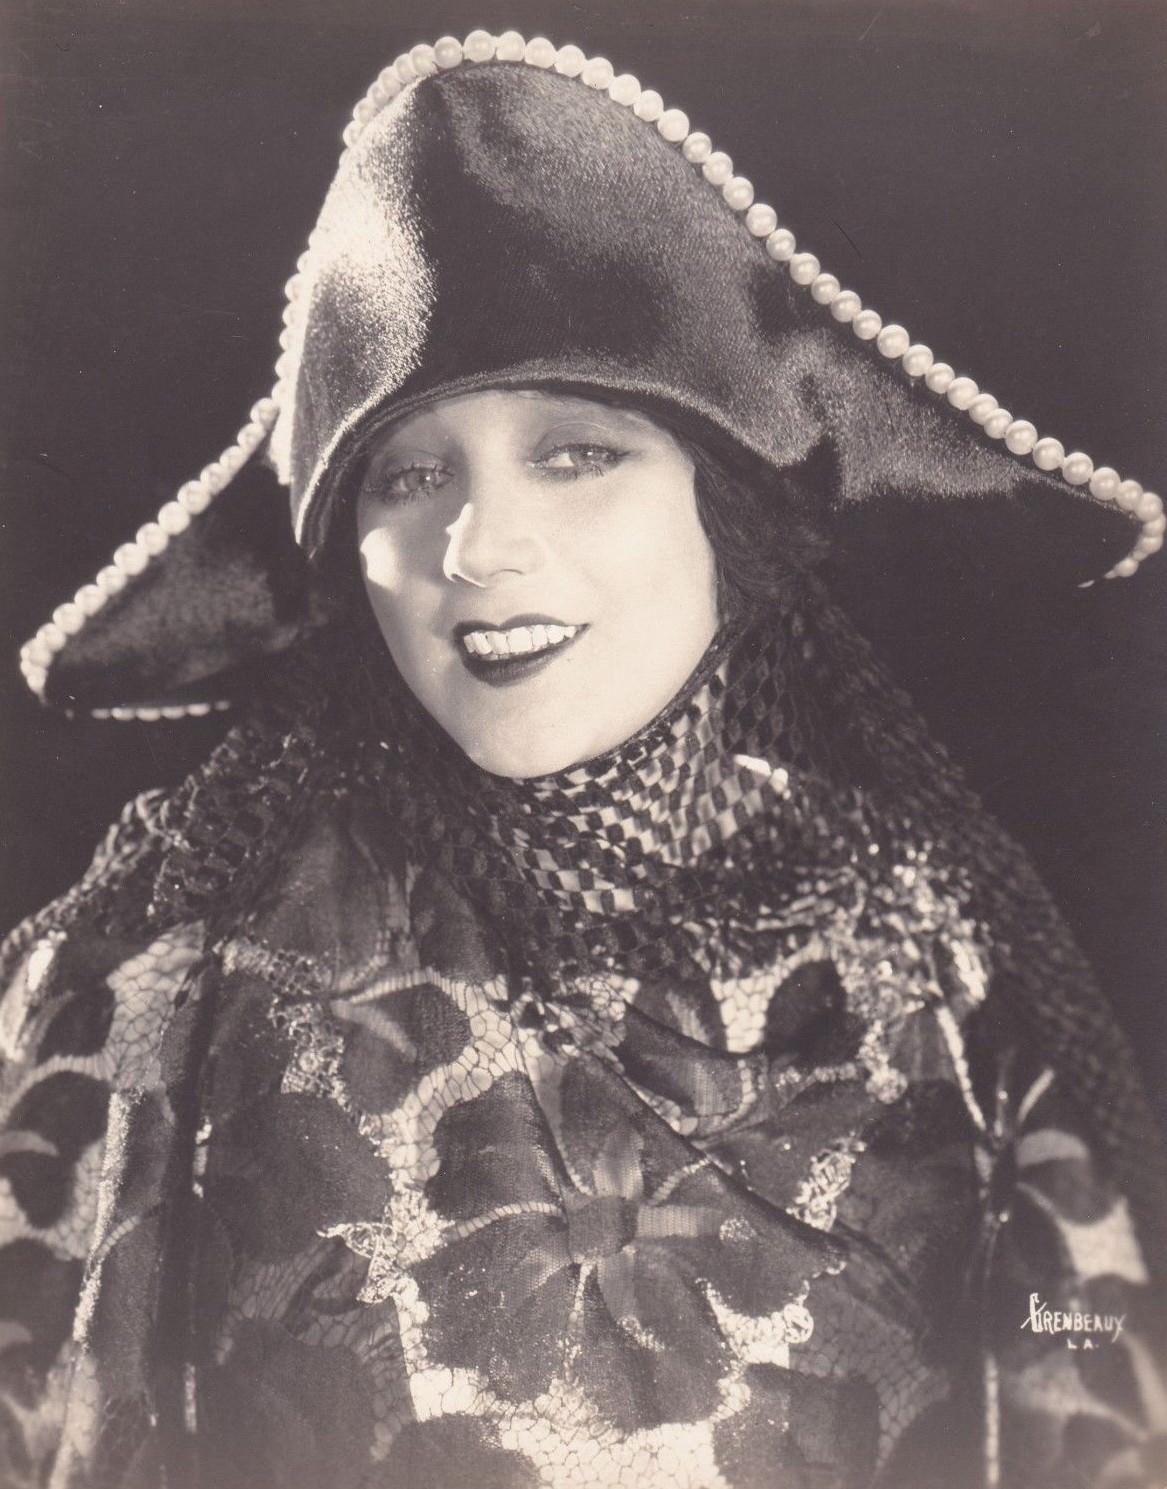 Barbara La Marr in "The White Moth", 1924